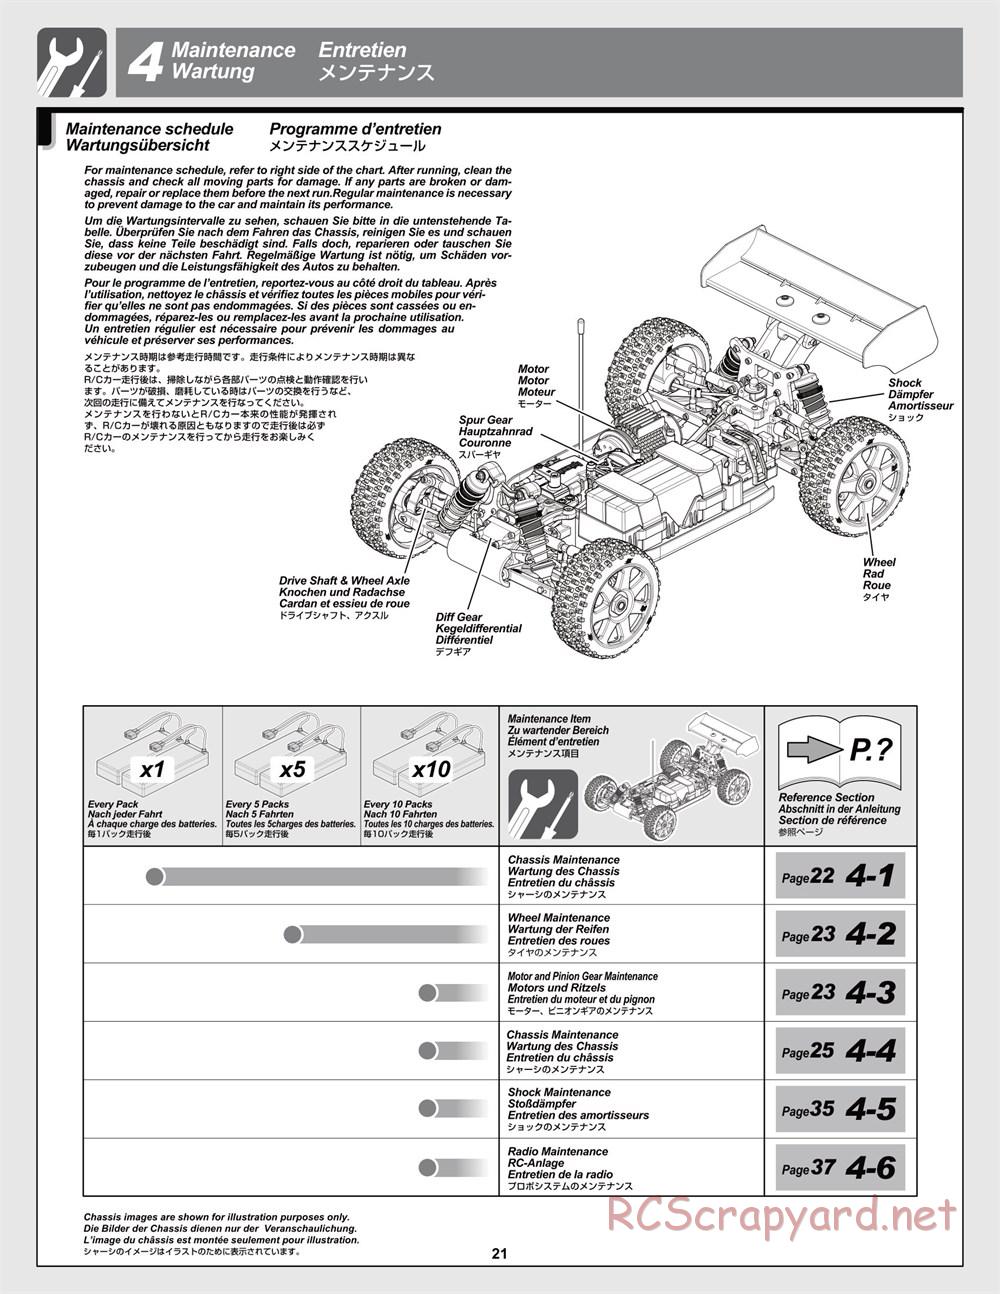 HPI - Trophy Flux Buggy - Manual - Page 21